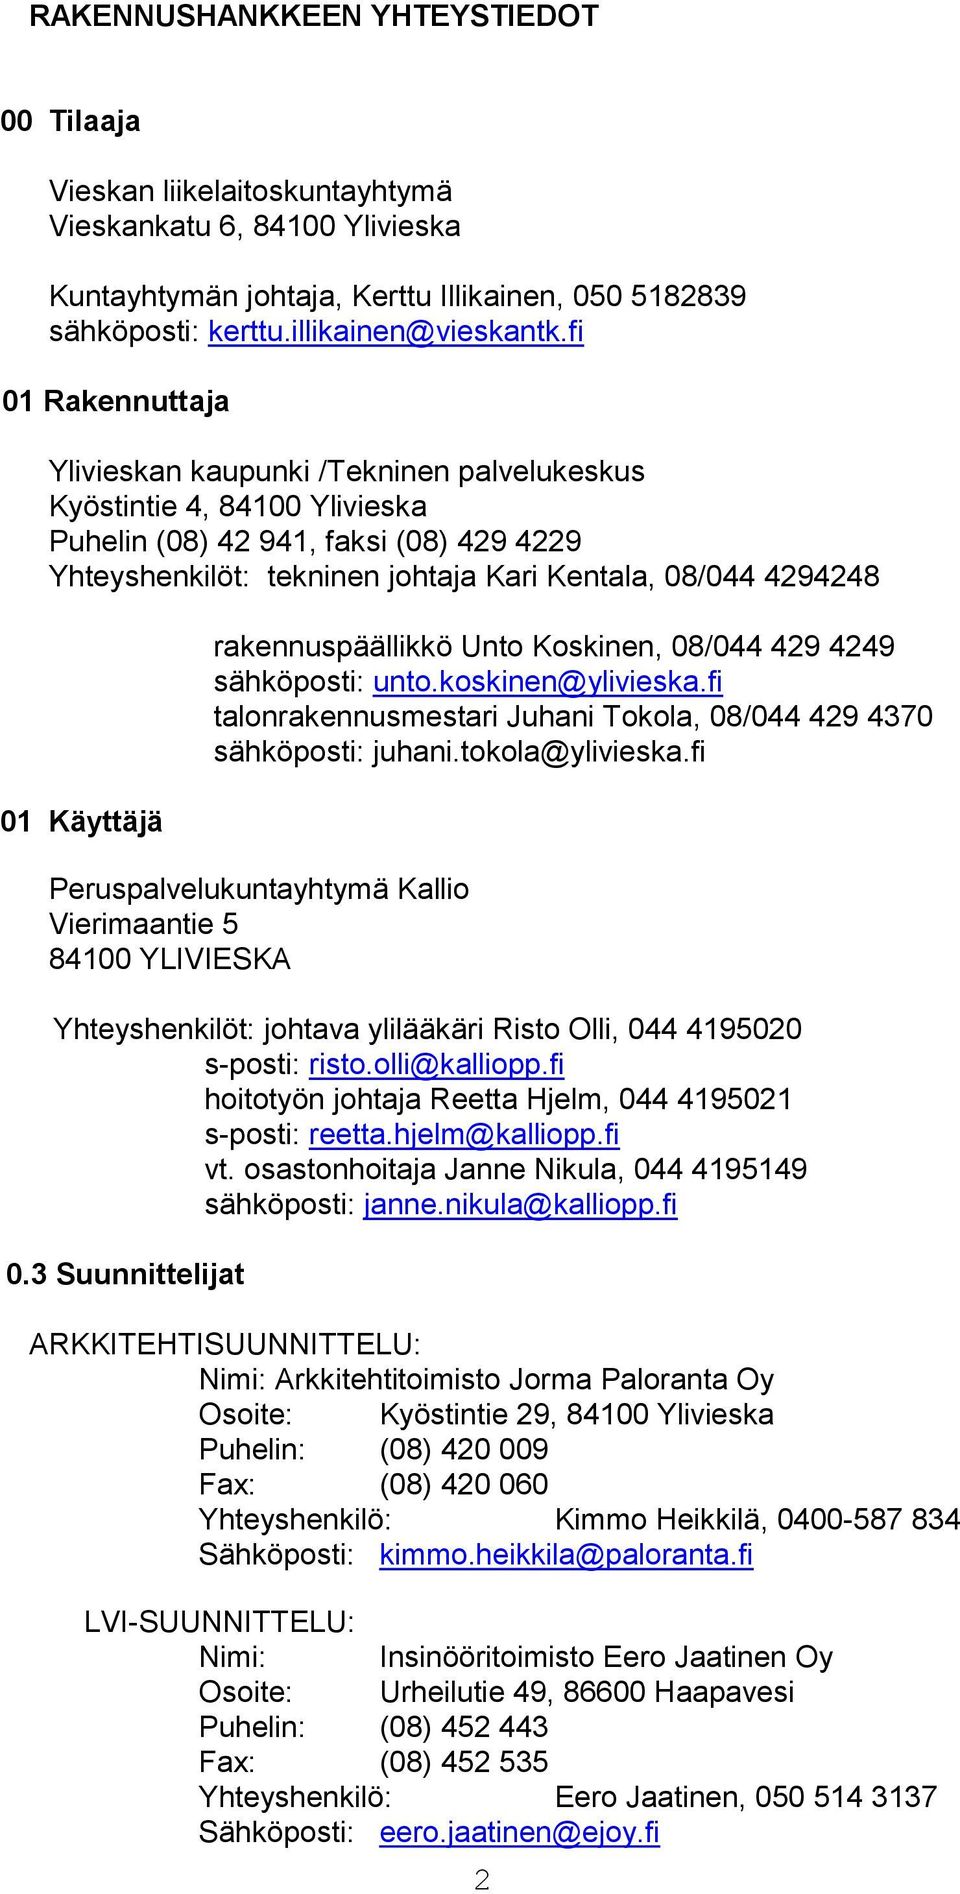 Käyttäjä rakennuspäällikkö Unto Koskinen, 08/044 429 4249 sähköposti: unto.koskinen@ylivieska.fi talonrakennusmestari Juhani Tokola, 08/044 429 4370 sähköposti: juhani.tokola@ylivieska.